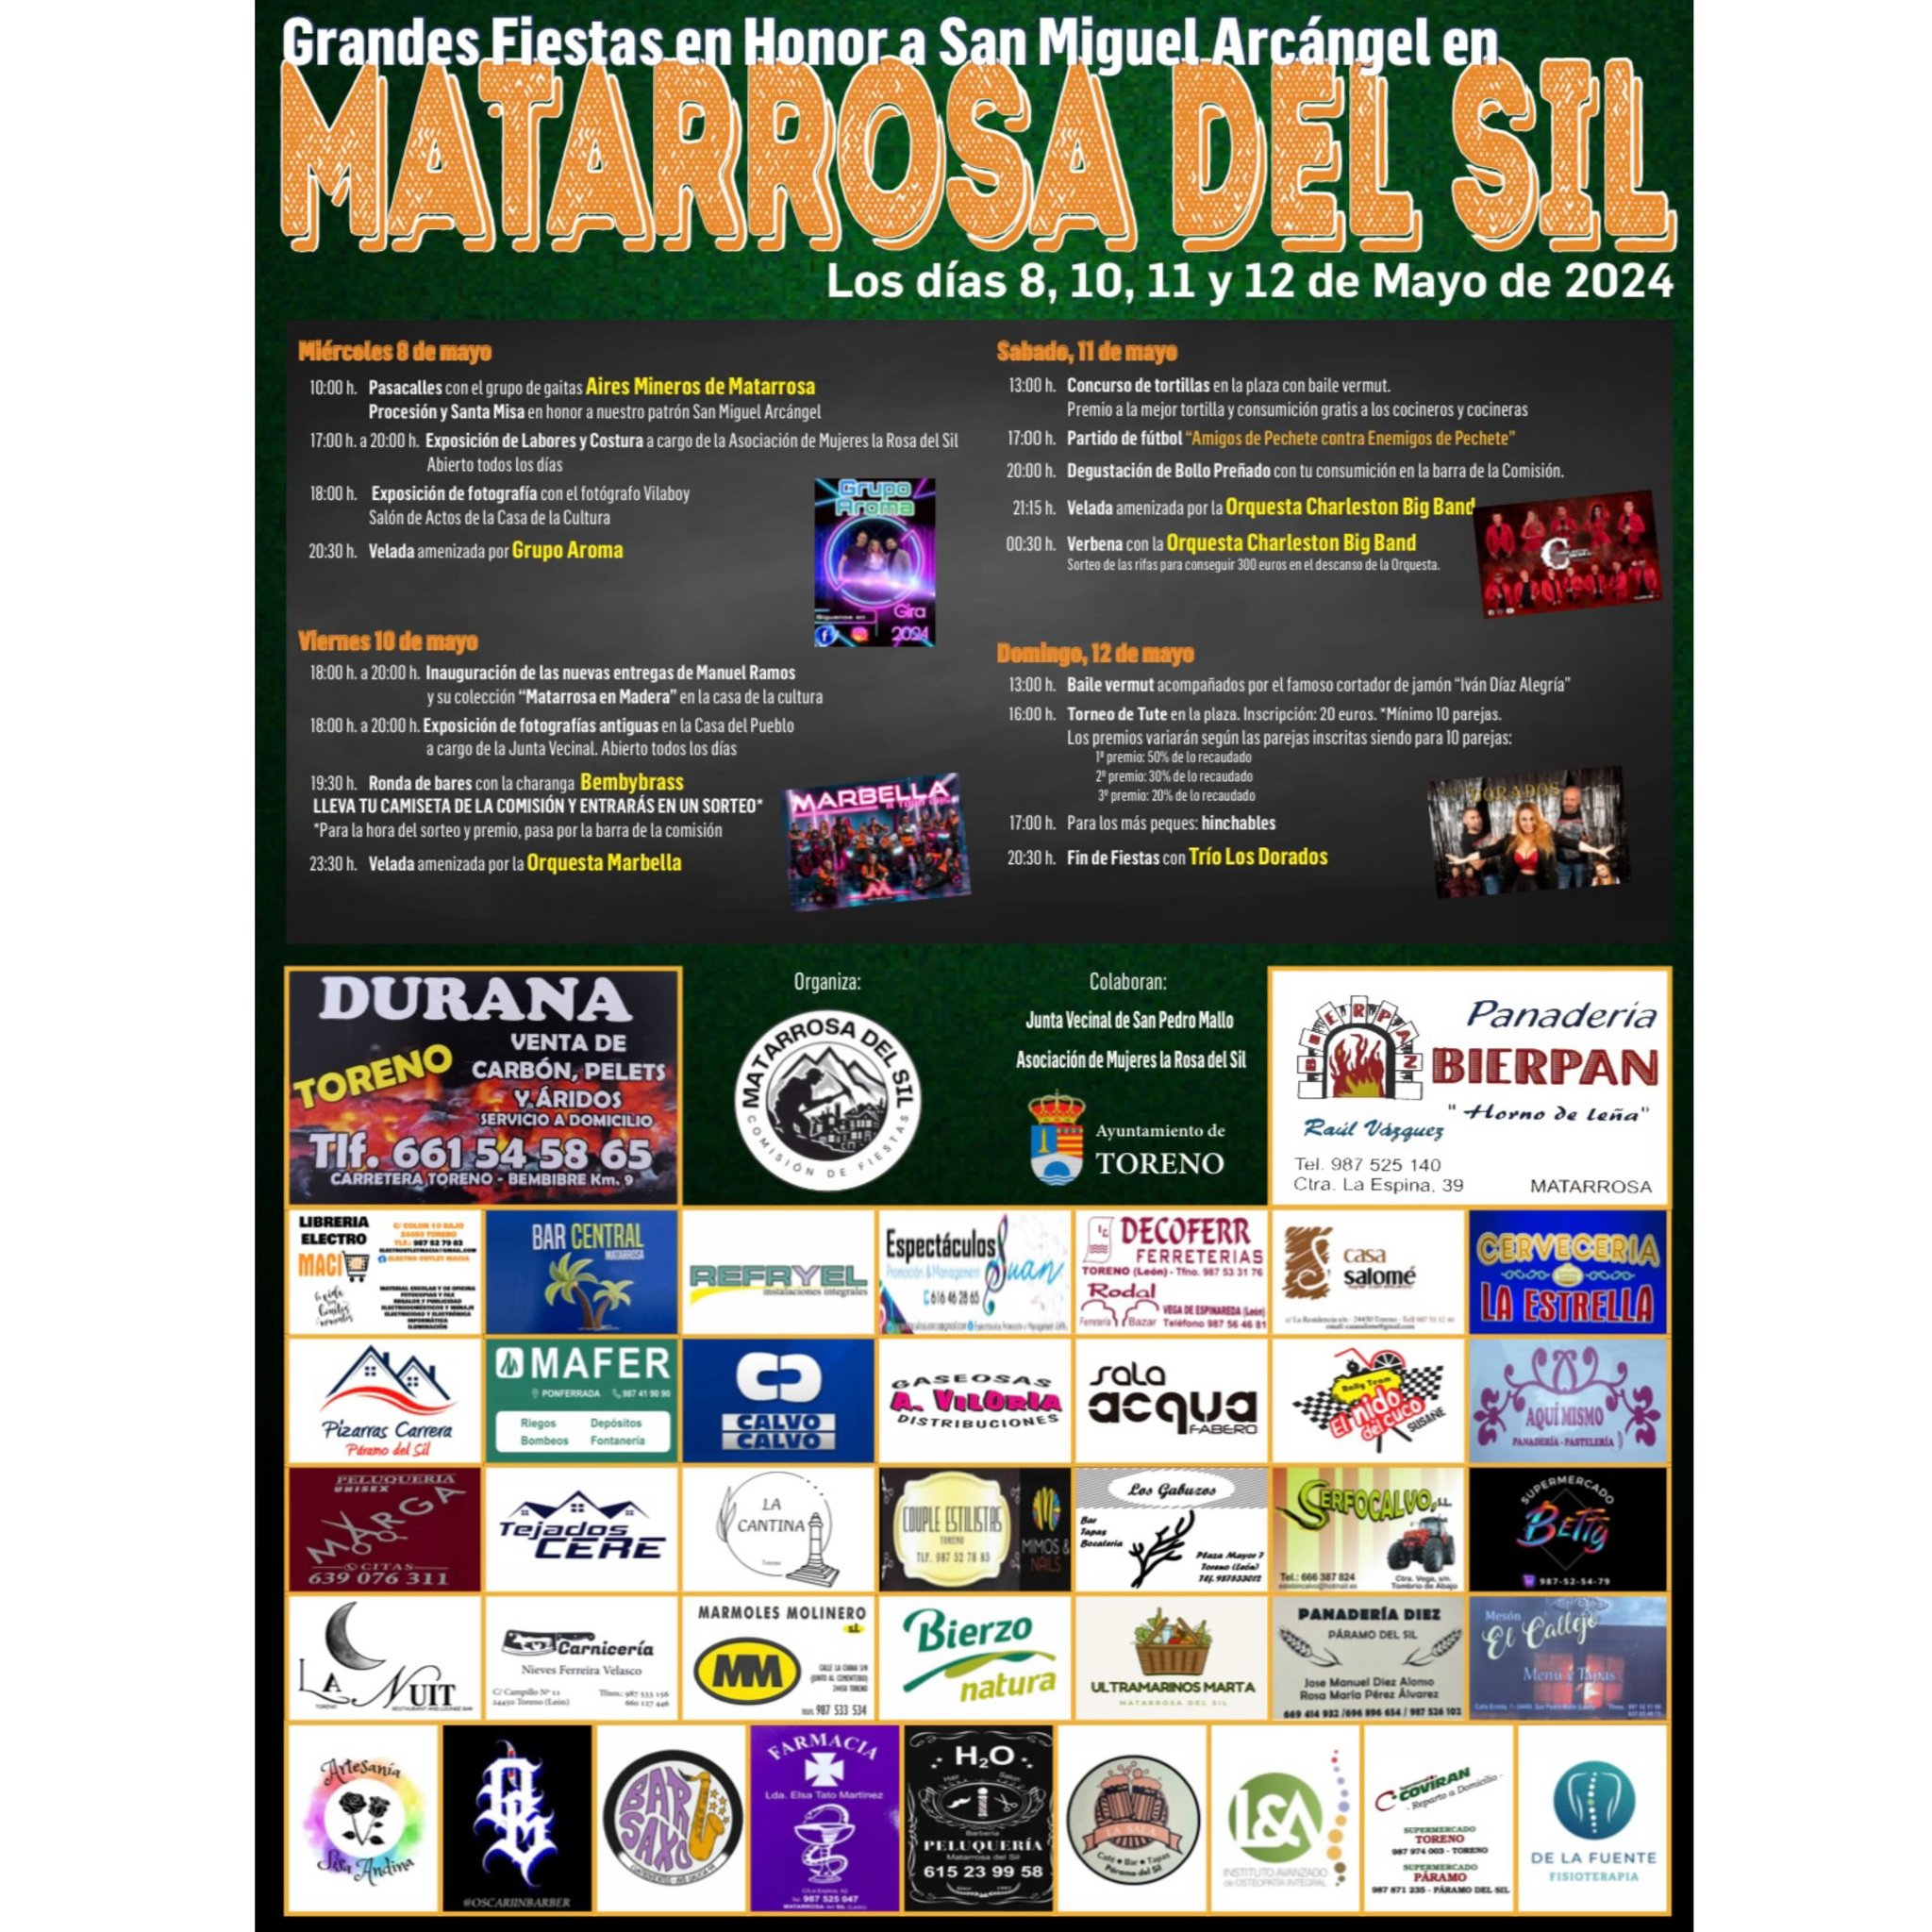 Fiestas en Matarrosa del Sil en honor a San Miguel Arcángel 2024 del 8 al 12 de mayo 4